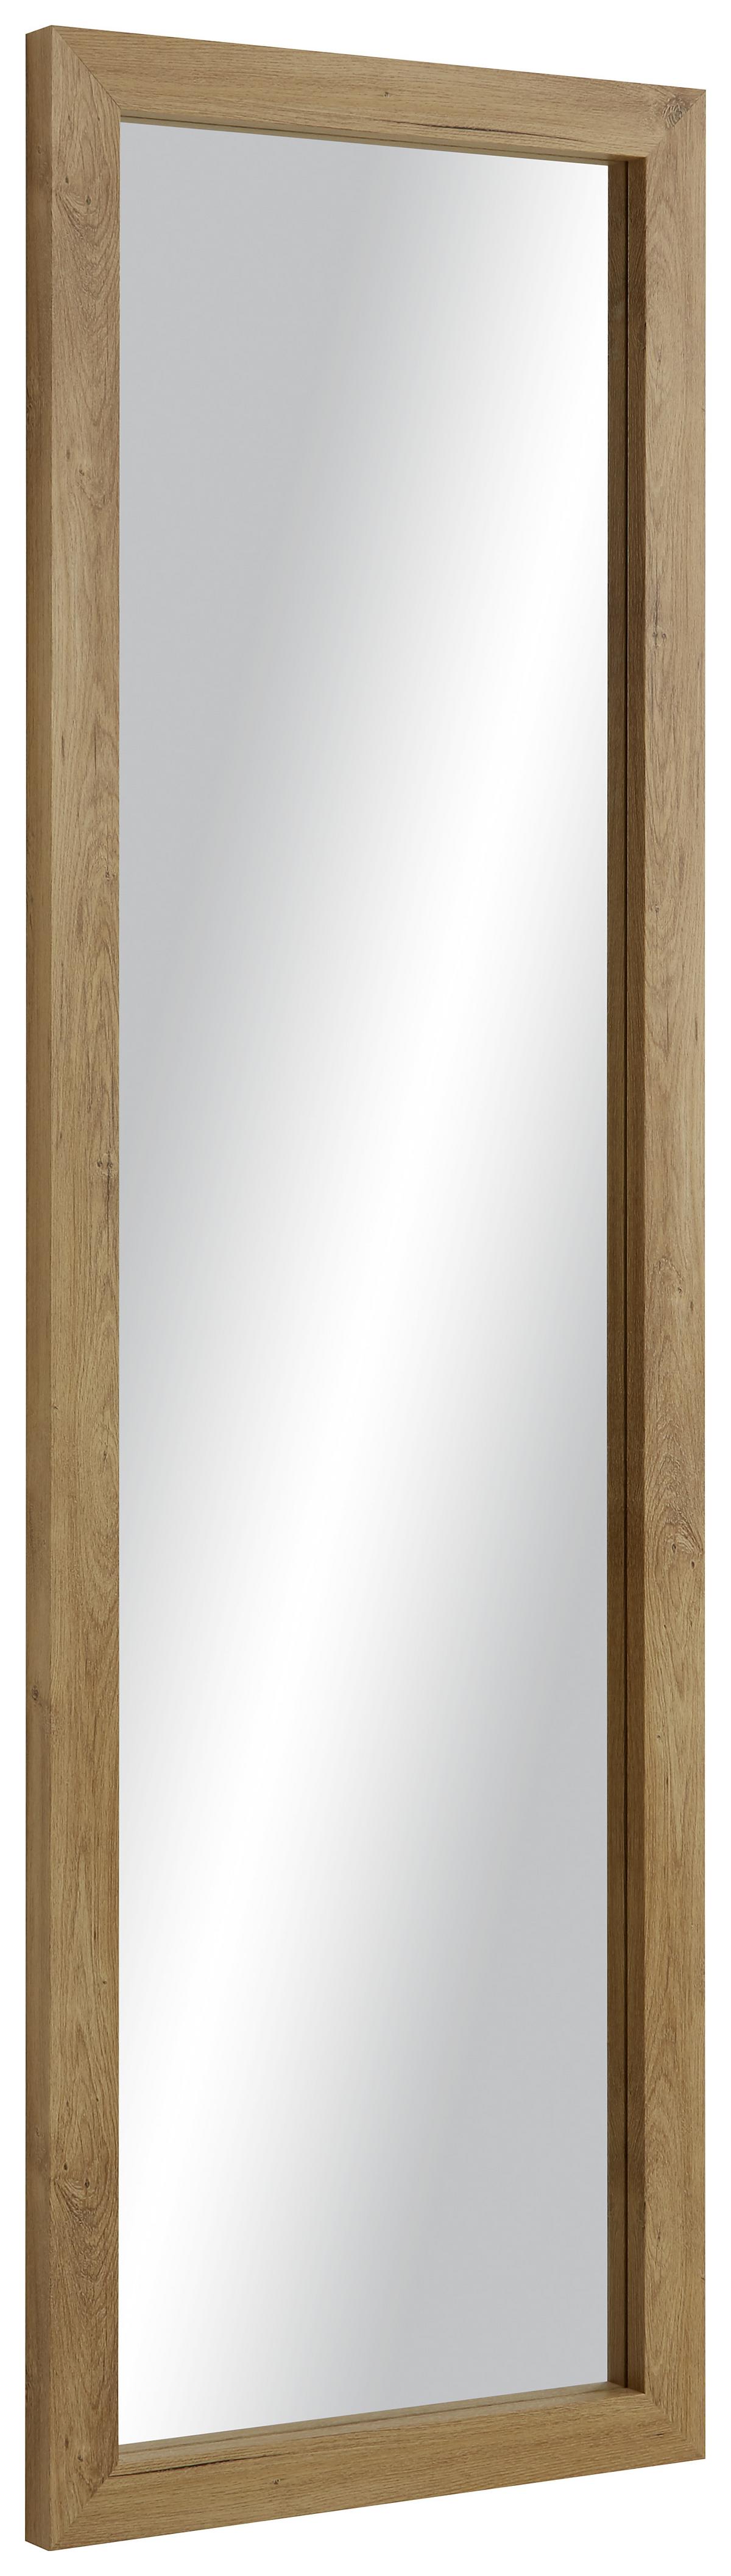 ZmdecQna Wandspiegel Spiegel Selbstklebend,Wandaufkleber,Wohnzimmer,50x100cm